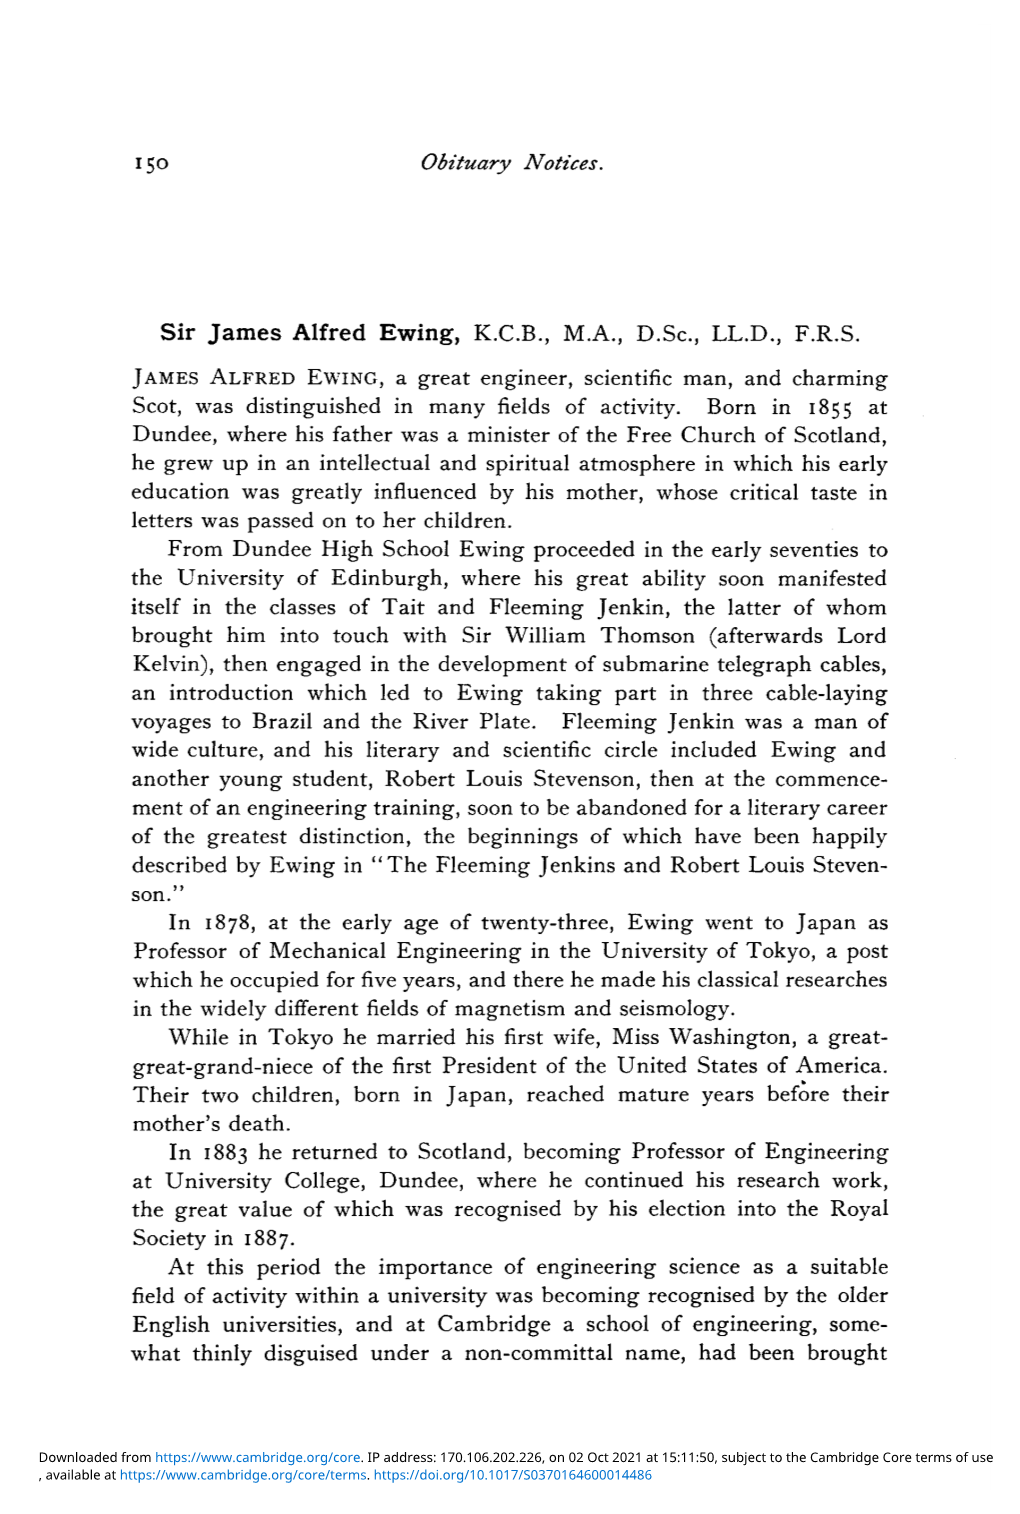 Sir James Alfred Ewing, K.C.B., M.A., D.Sc, LL.D., F.R.S